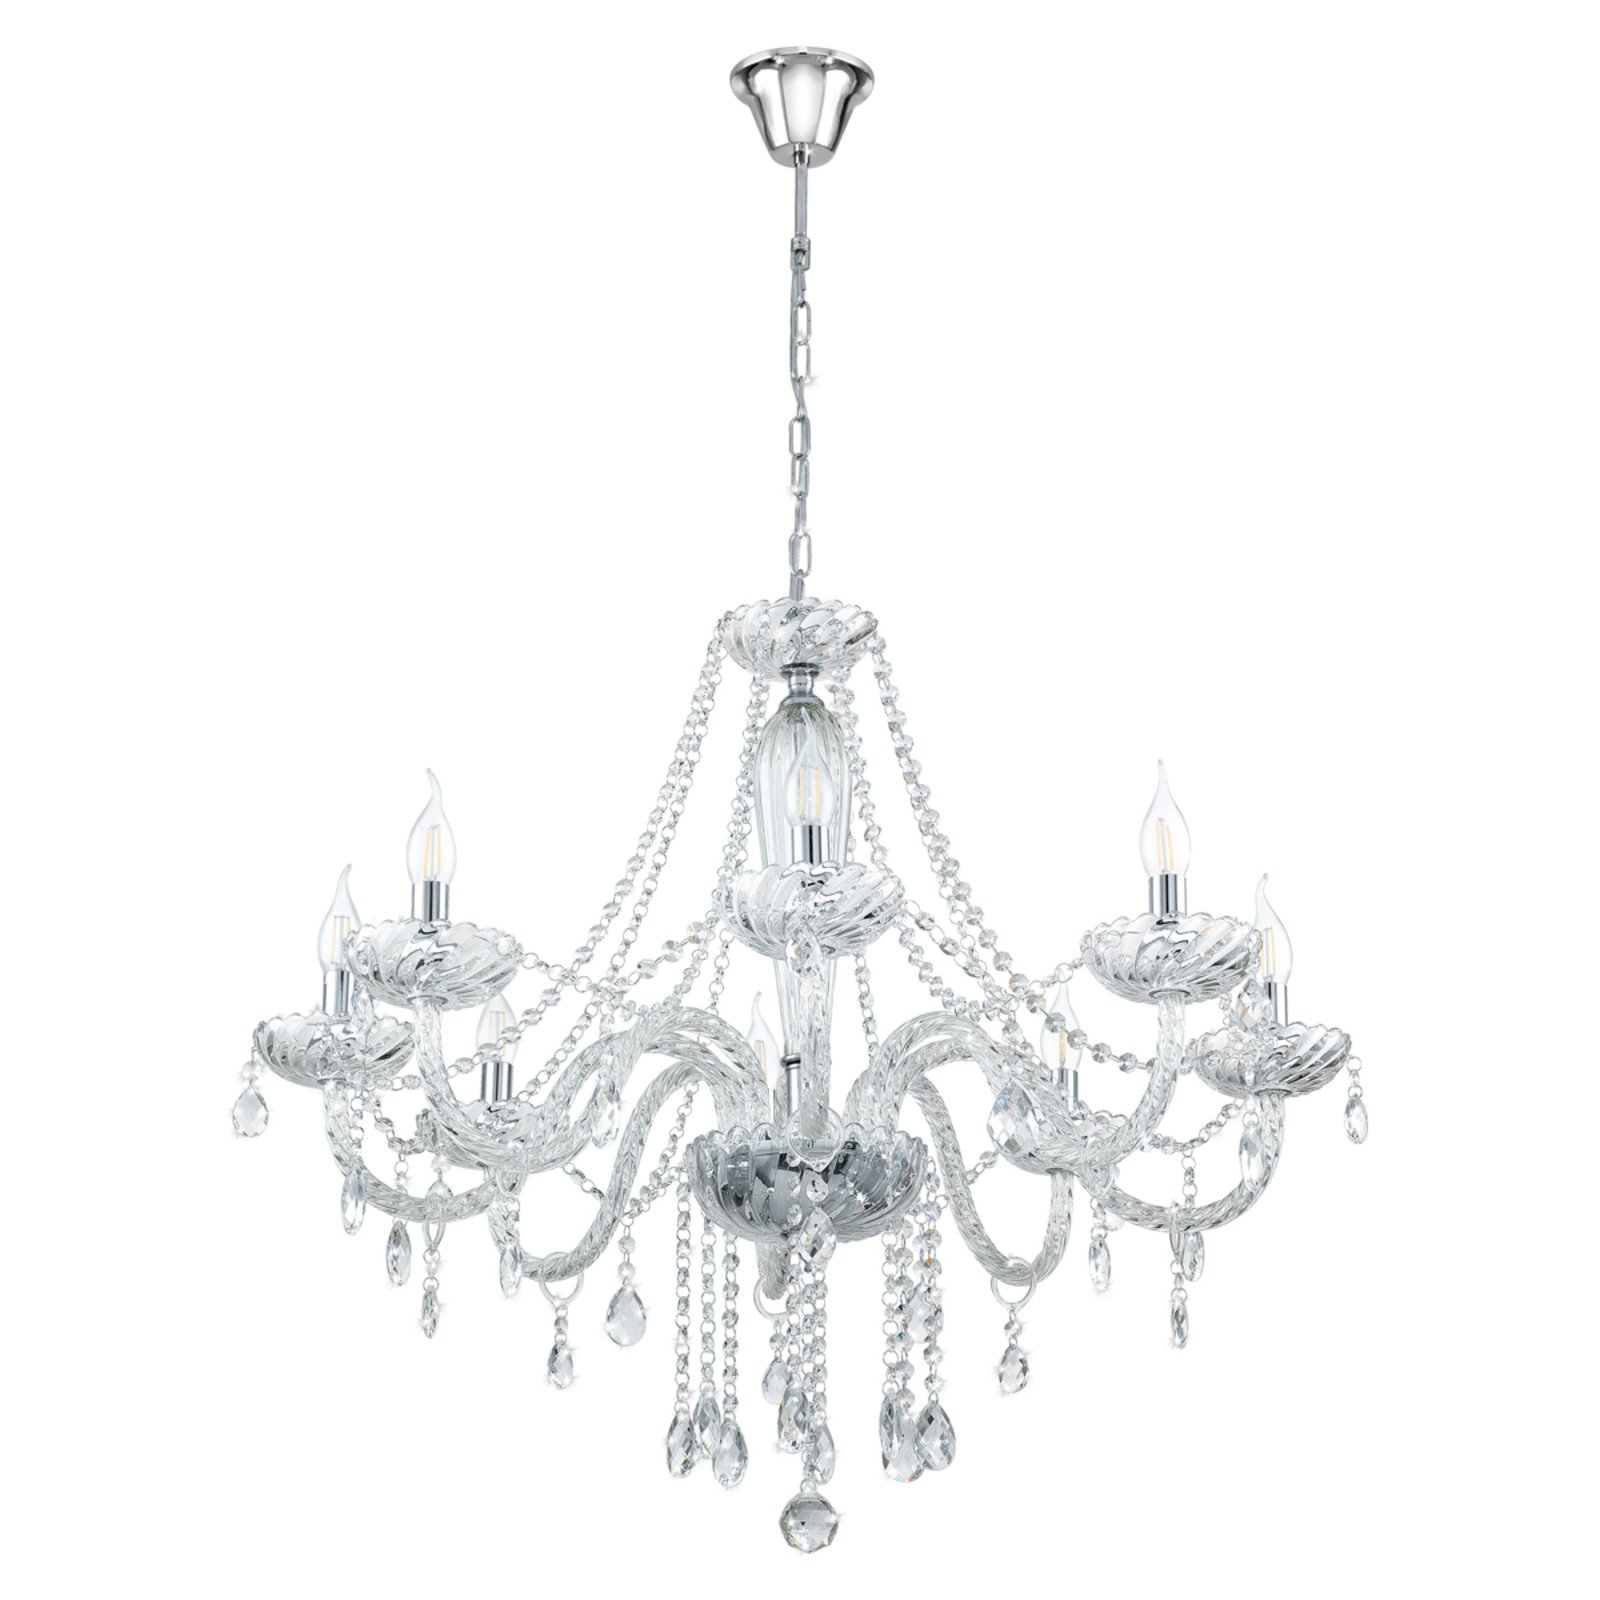 Decorative Basilano chandelier